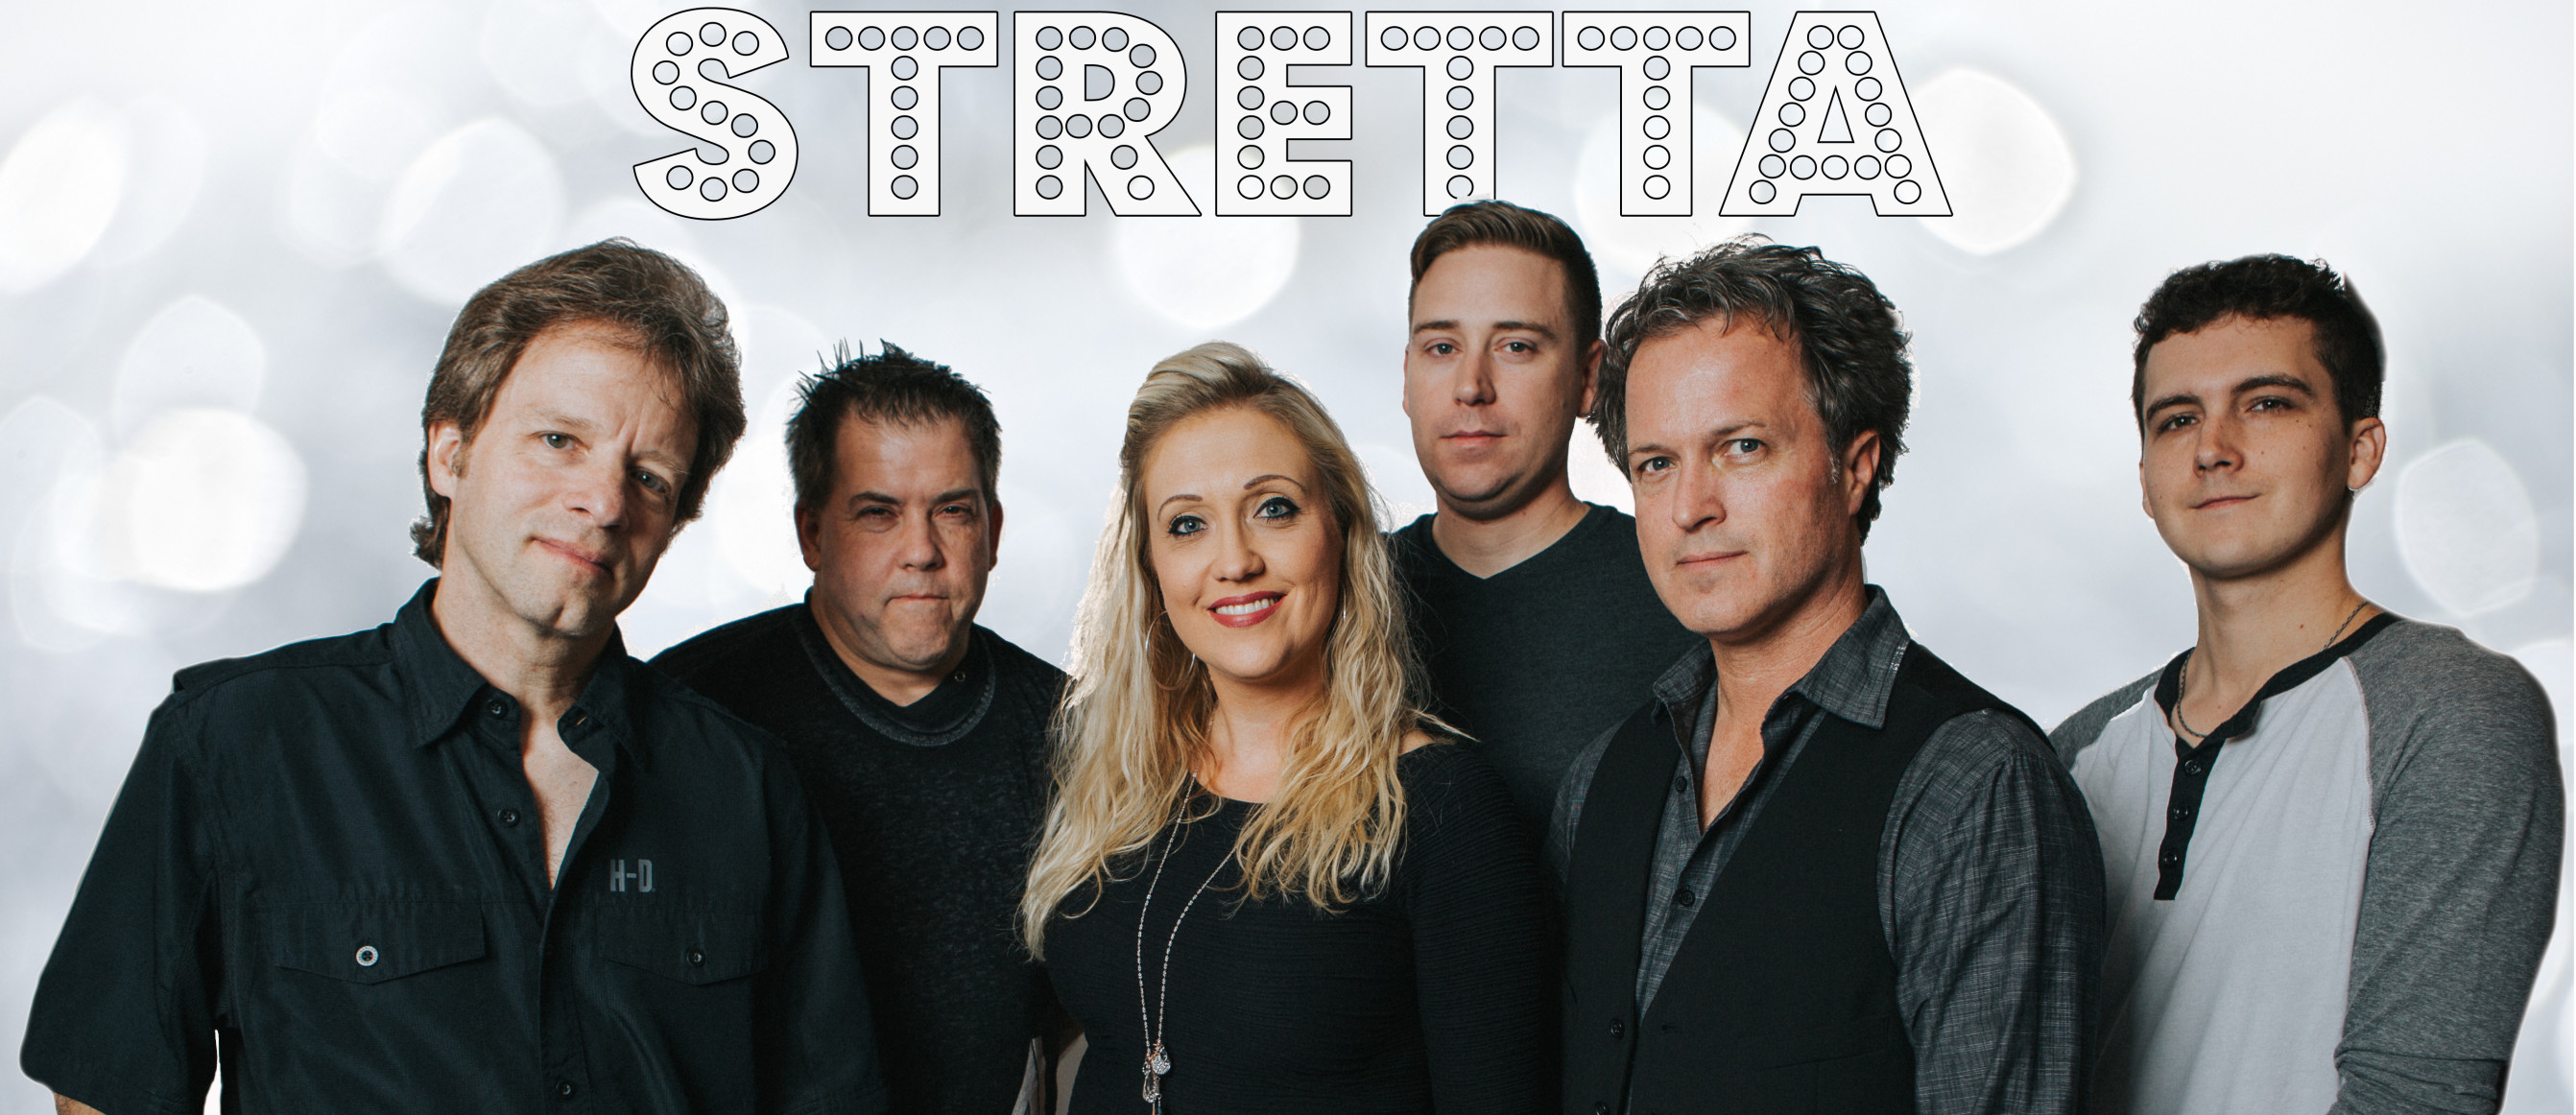 Nashville Bands - Top Nashville Bands for Hire - Stretta